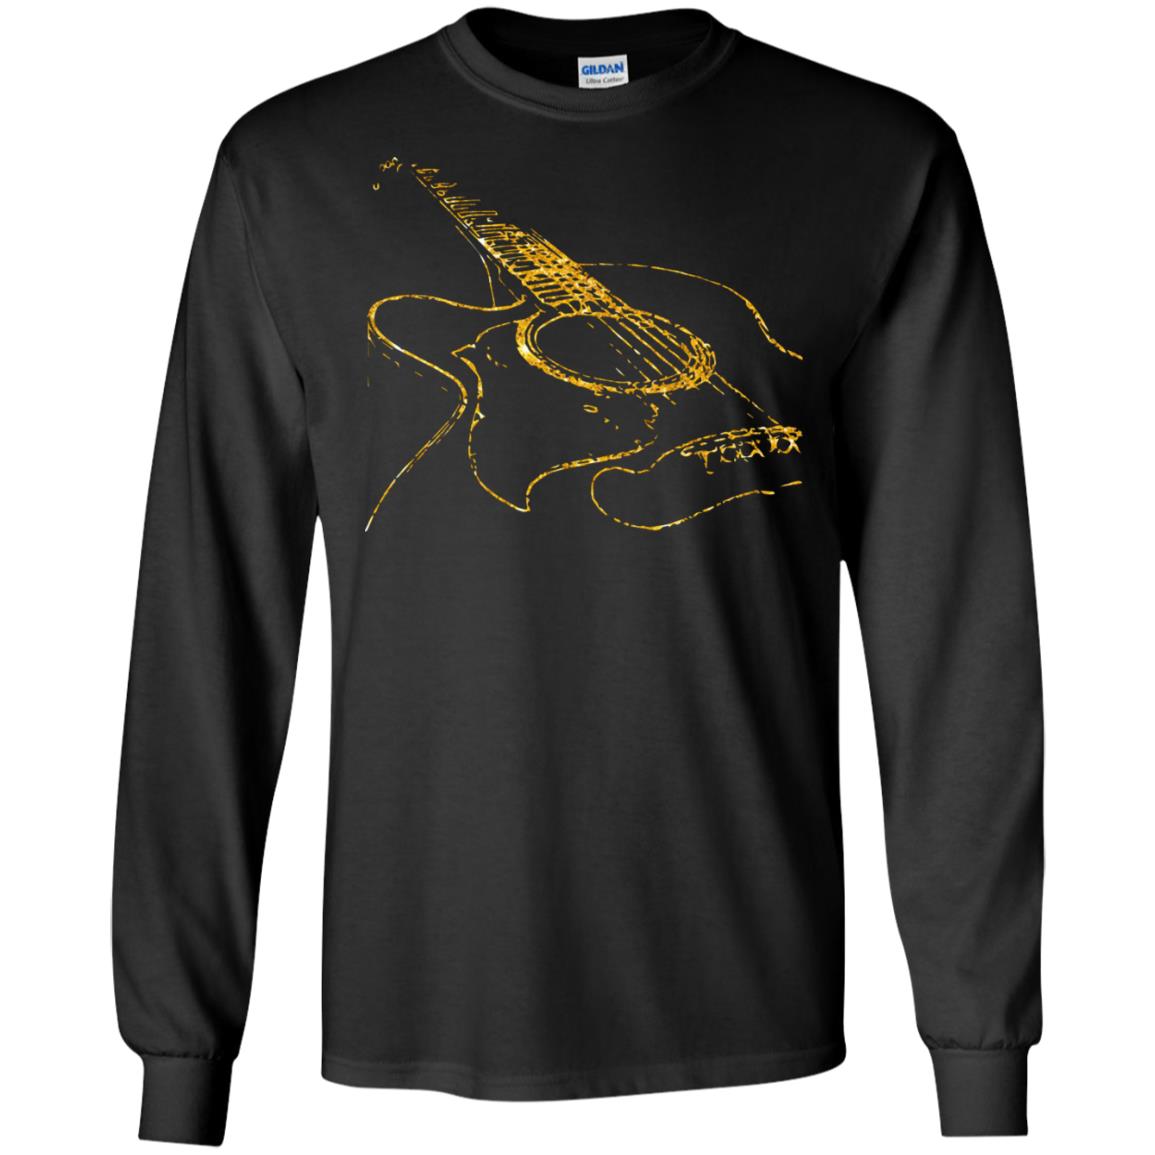 Guitar Gold Guitarist Gift Shirt For Mens Or WomensG240 Gildan LS Ultra Cotton T-Shirt